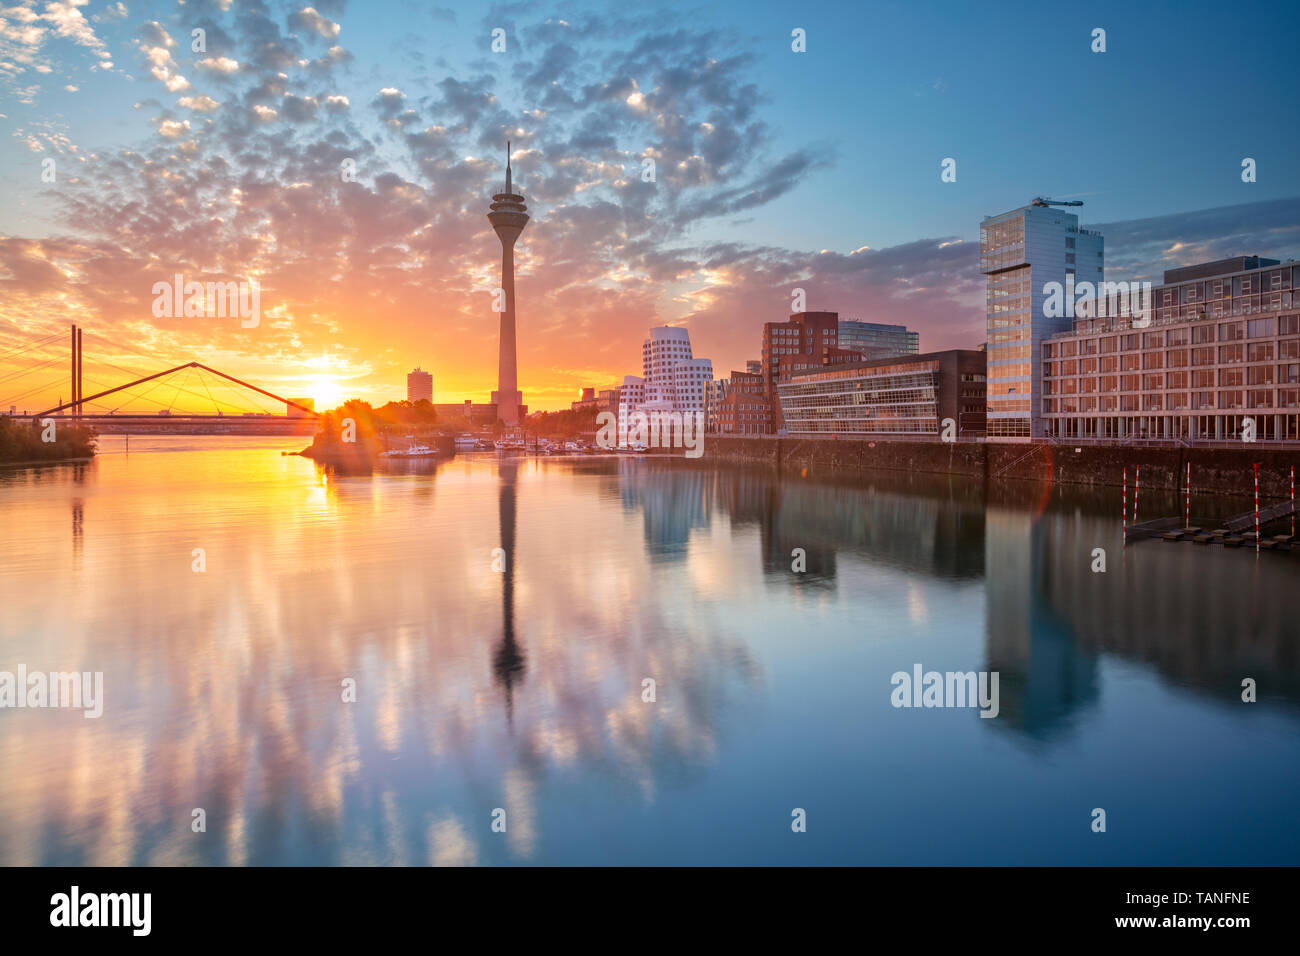 Düsseldorf, Deutschland. Stadtbild von Düsseldorf, Deutschland mit dem Medienhafen und Spiegelung der Stadt am Rhein, bei Sonnenaufgang. Stockfoto